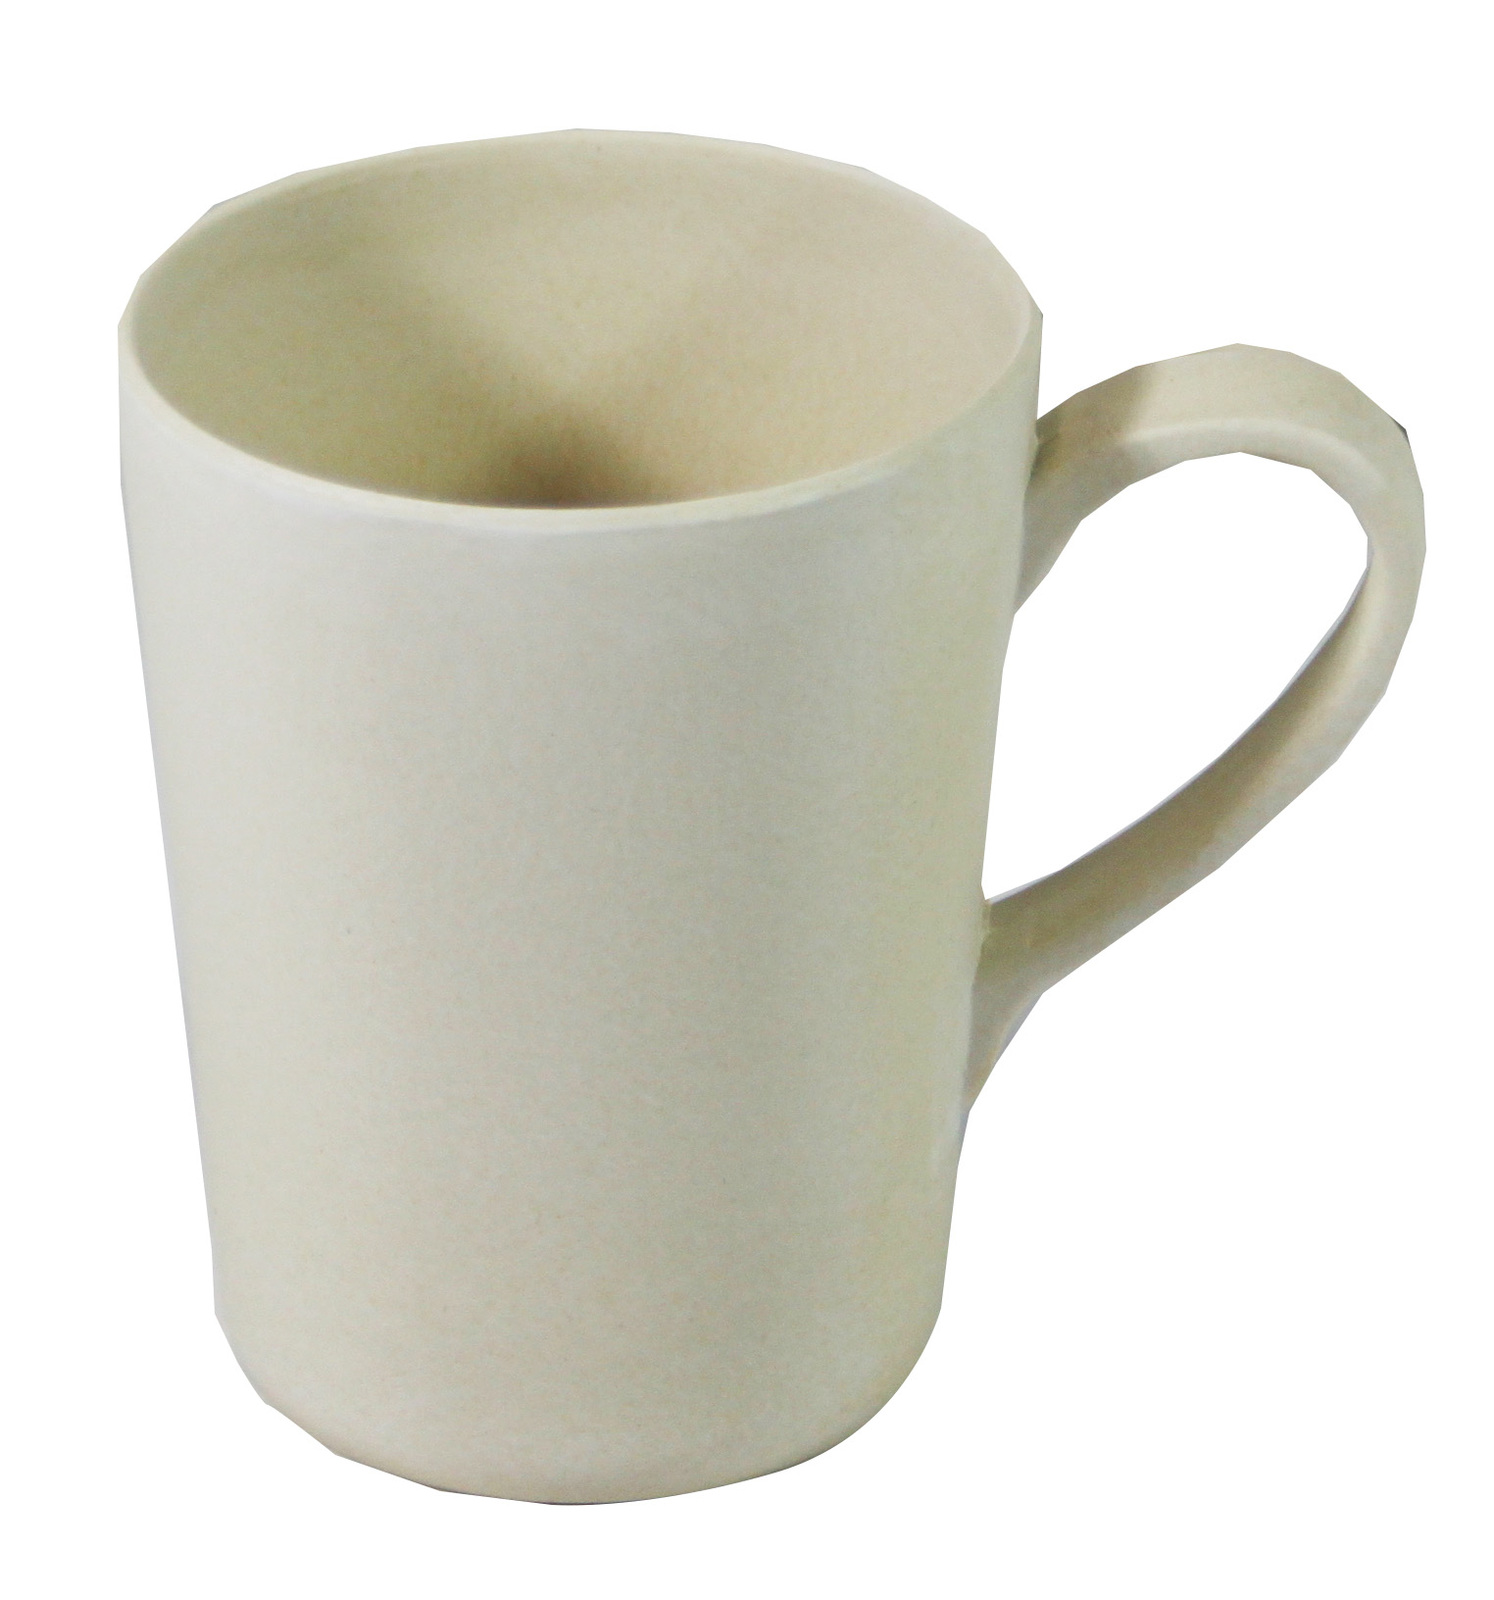 *SPECIAL: Bamboo Crockery Natural - Mug With Handle 365ml